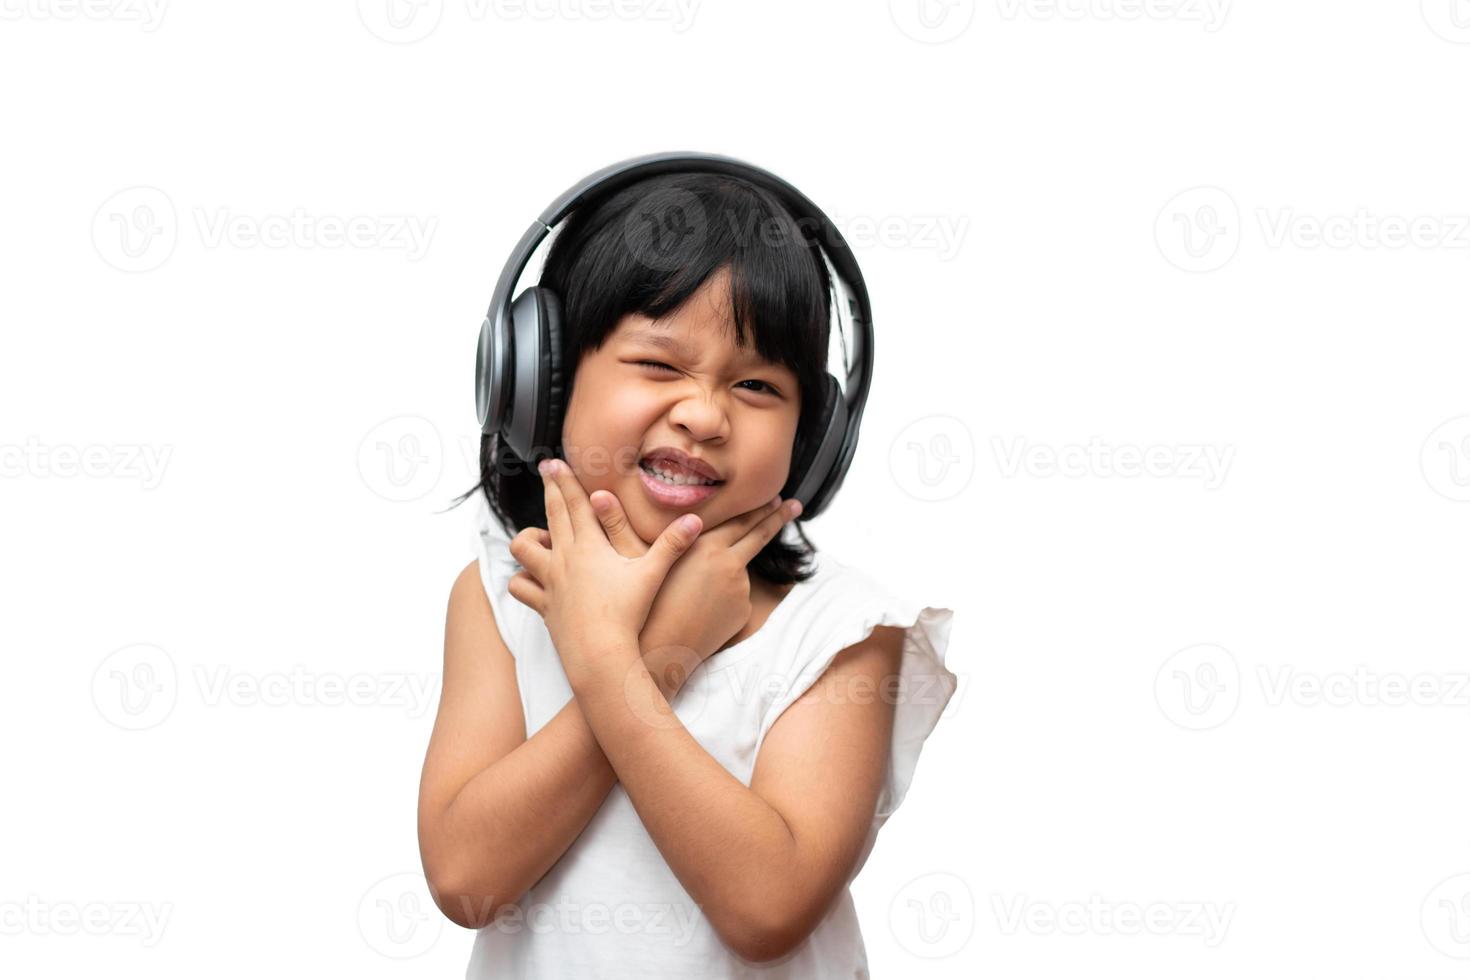 retrato de menina criança asiática feliz e engraçada sobre fundo branco, uma criança olhando para o gesto com a mão da câmera. criança pré-escolar sonhando com energia sentindo-se saudável e bom conceito foto